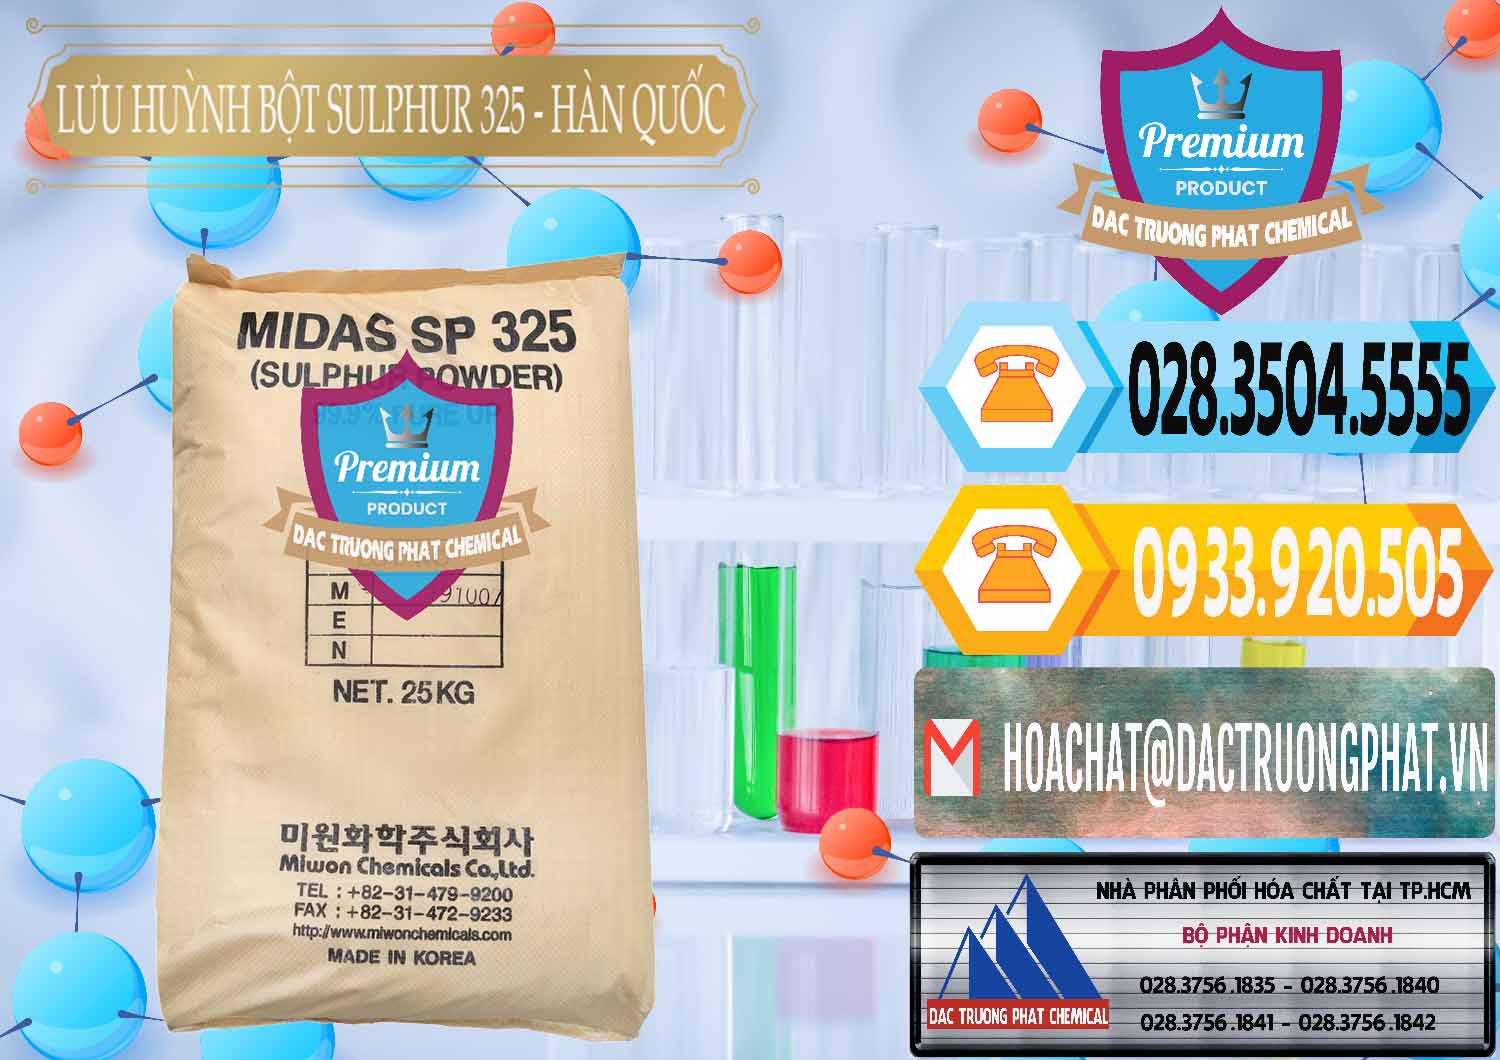 Nơi bán và cung ứng Lưu huỳnh Bột - Sulfur Powder Midas SP 325 Hàn Quốc Korea - 0198 - Phân phối - cung ứng hóa chất tại TP.HCM - hoachattayrua.net